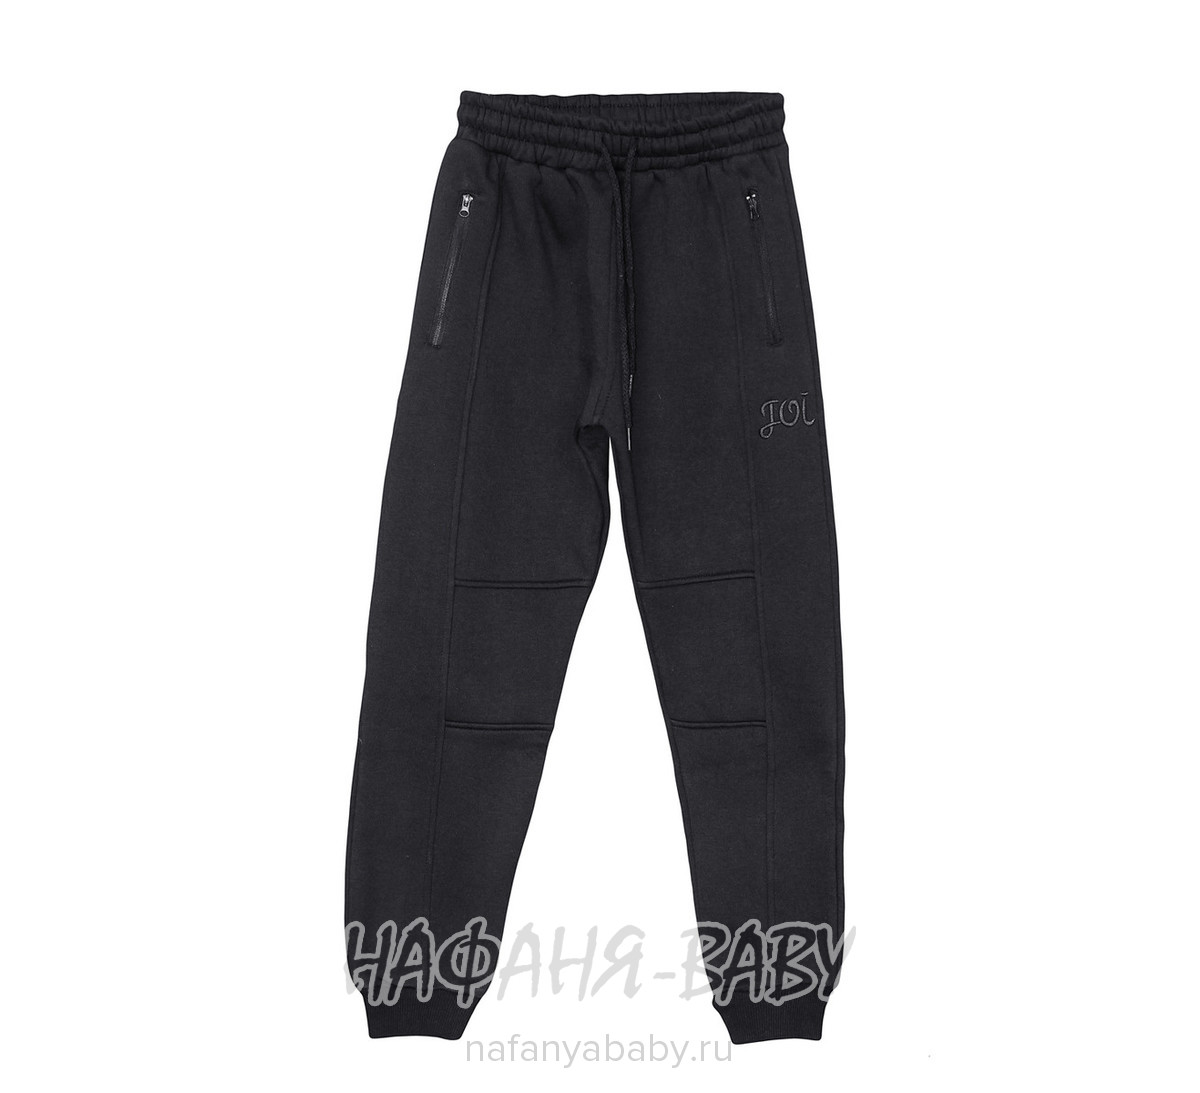 Подростковые трикотажные брюки JOI, купить в интернет магазине Нафаня. арт: 601.